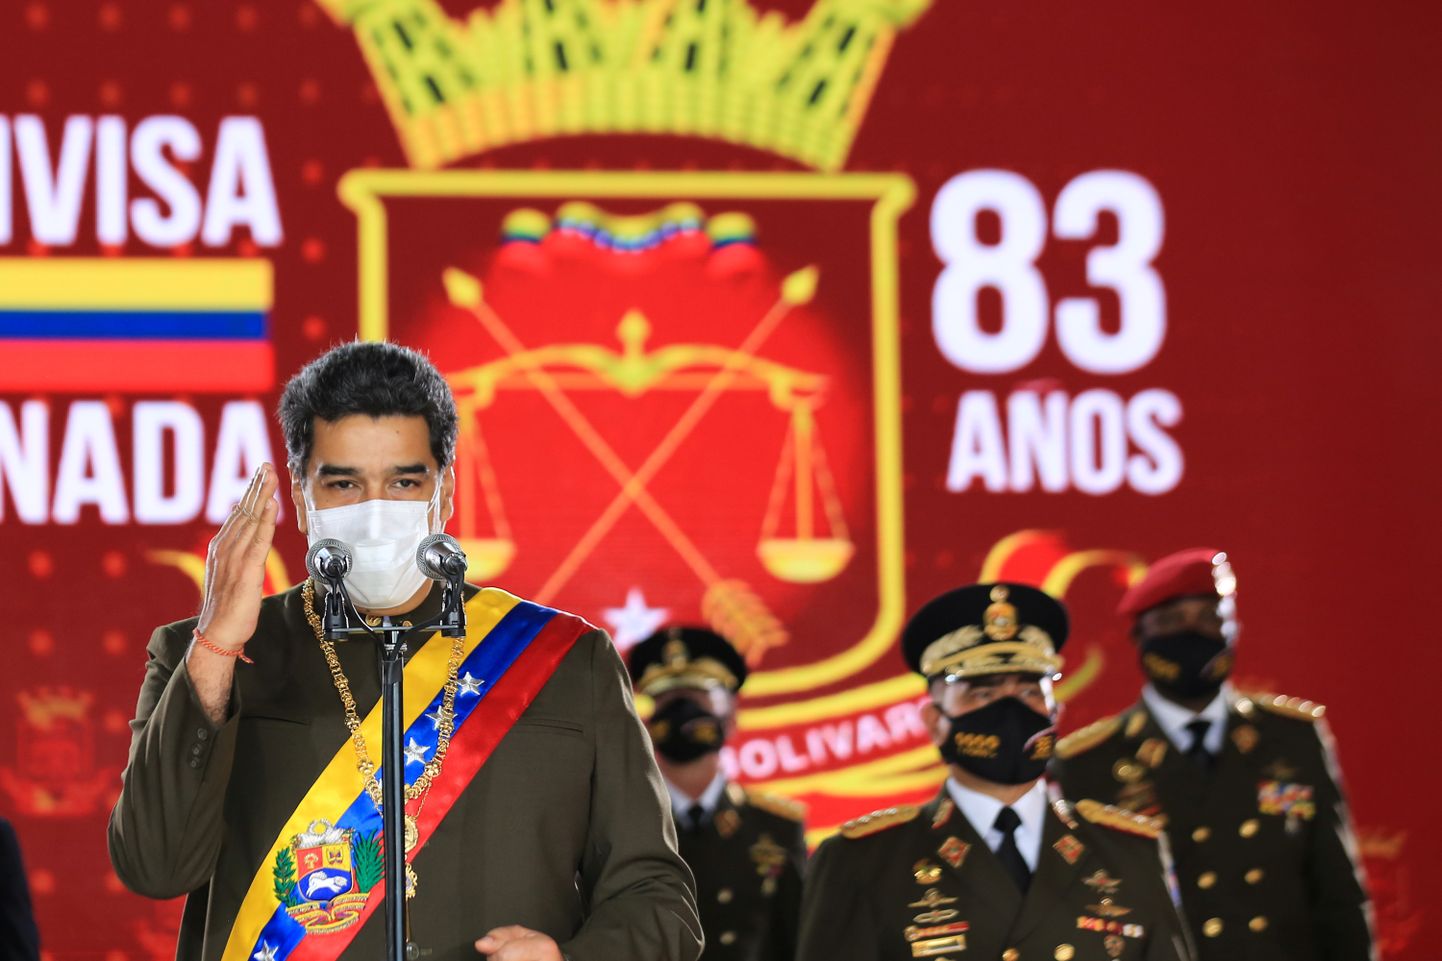 Venezuela president Nicolás Maduro kutsus venezuelalasi üles osalema Venemaa koroonavaktsiini katsetustes. President lubas olla esimene viiesajast katsealusest, keda Sputnik V-ga vaktsineeritakse. Paar päeva tagasi tehtud kordusüleskutses ta enam enda osalust ei maininud, vaid agiteeris rahvast aktiivsemale vaktsineerimisele. Pildil peab president rahvuskaardi 83. aastapäeva pidustustel sõjaväelastele kõnet, 4. augustil 2020.